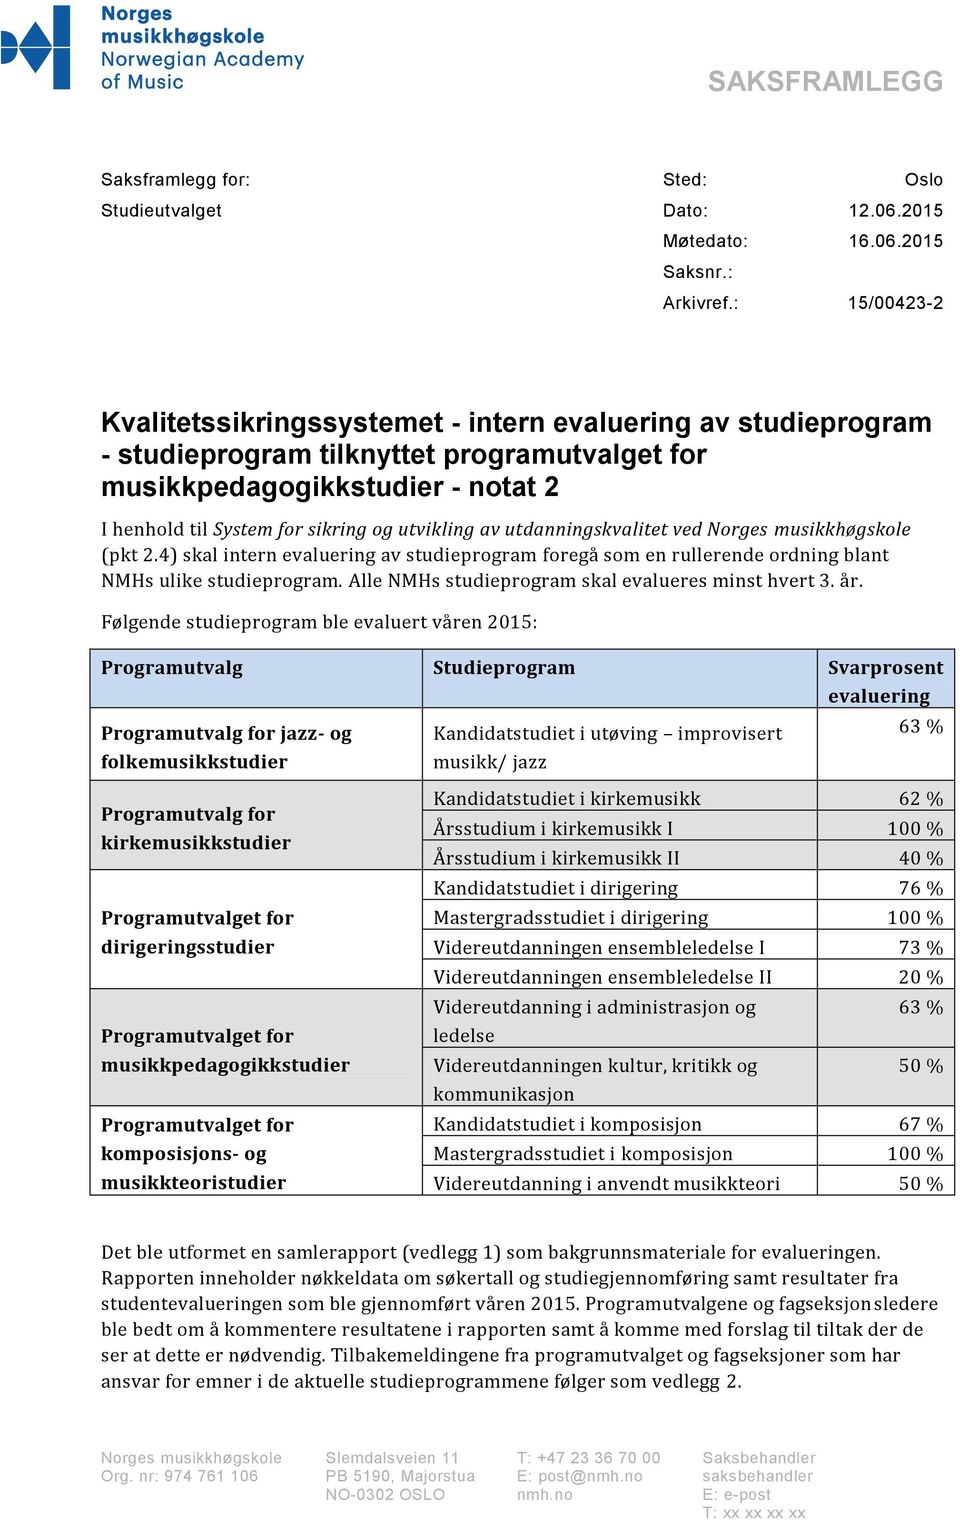 utvikling av utdanningskvalitet ved Norges musikkhøgskole (pkt 2.4) skal intern evaluering av studieprogram foregå som en rullerende ordning blant NMHs ulike studieprogram.